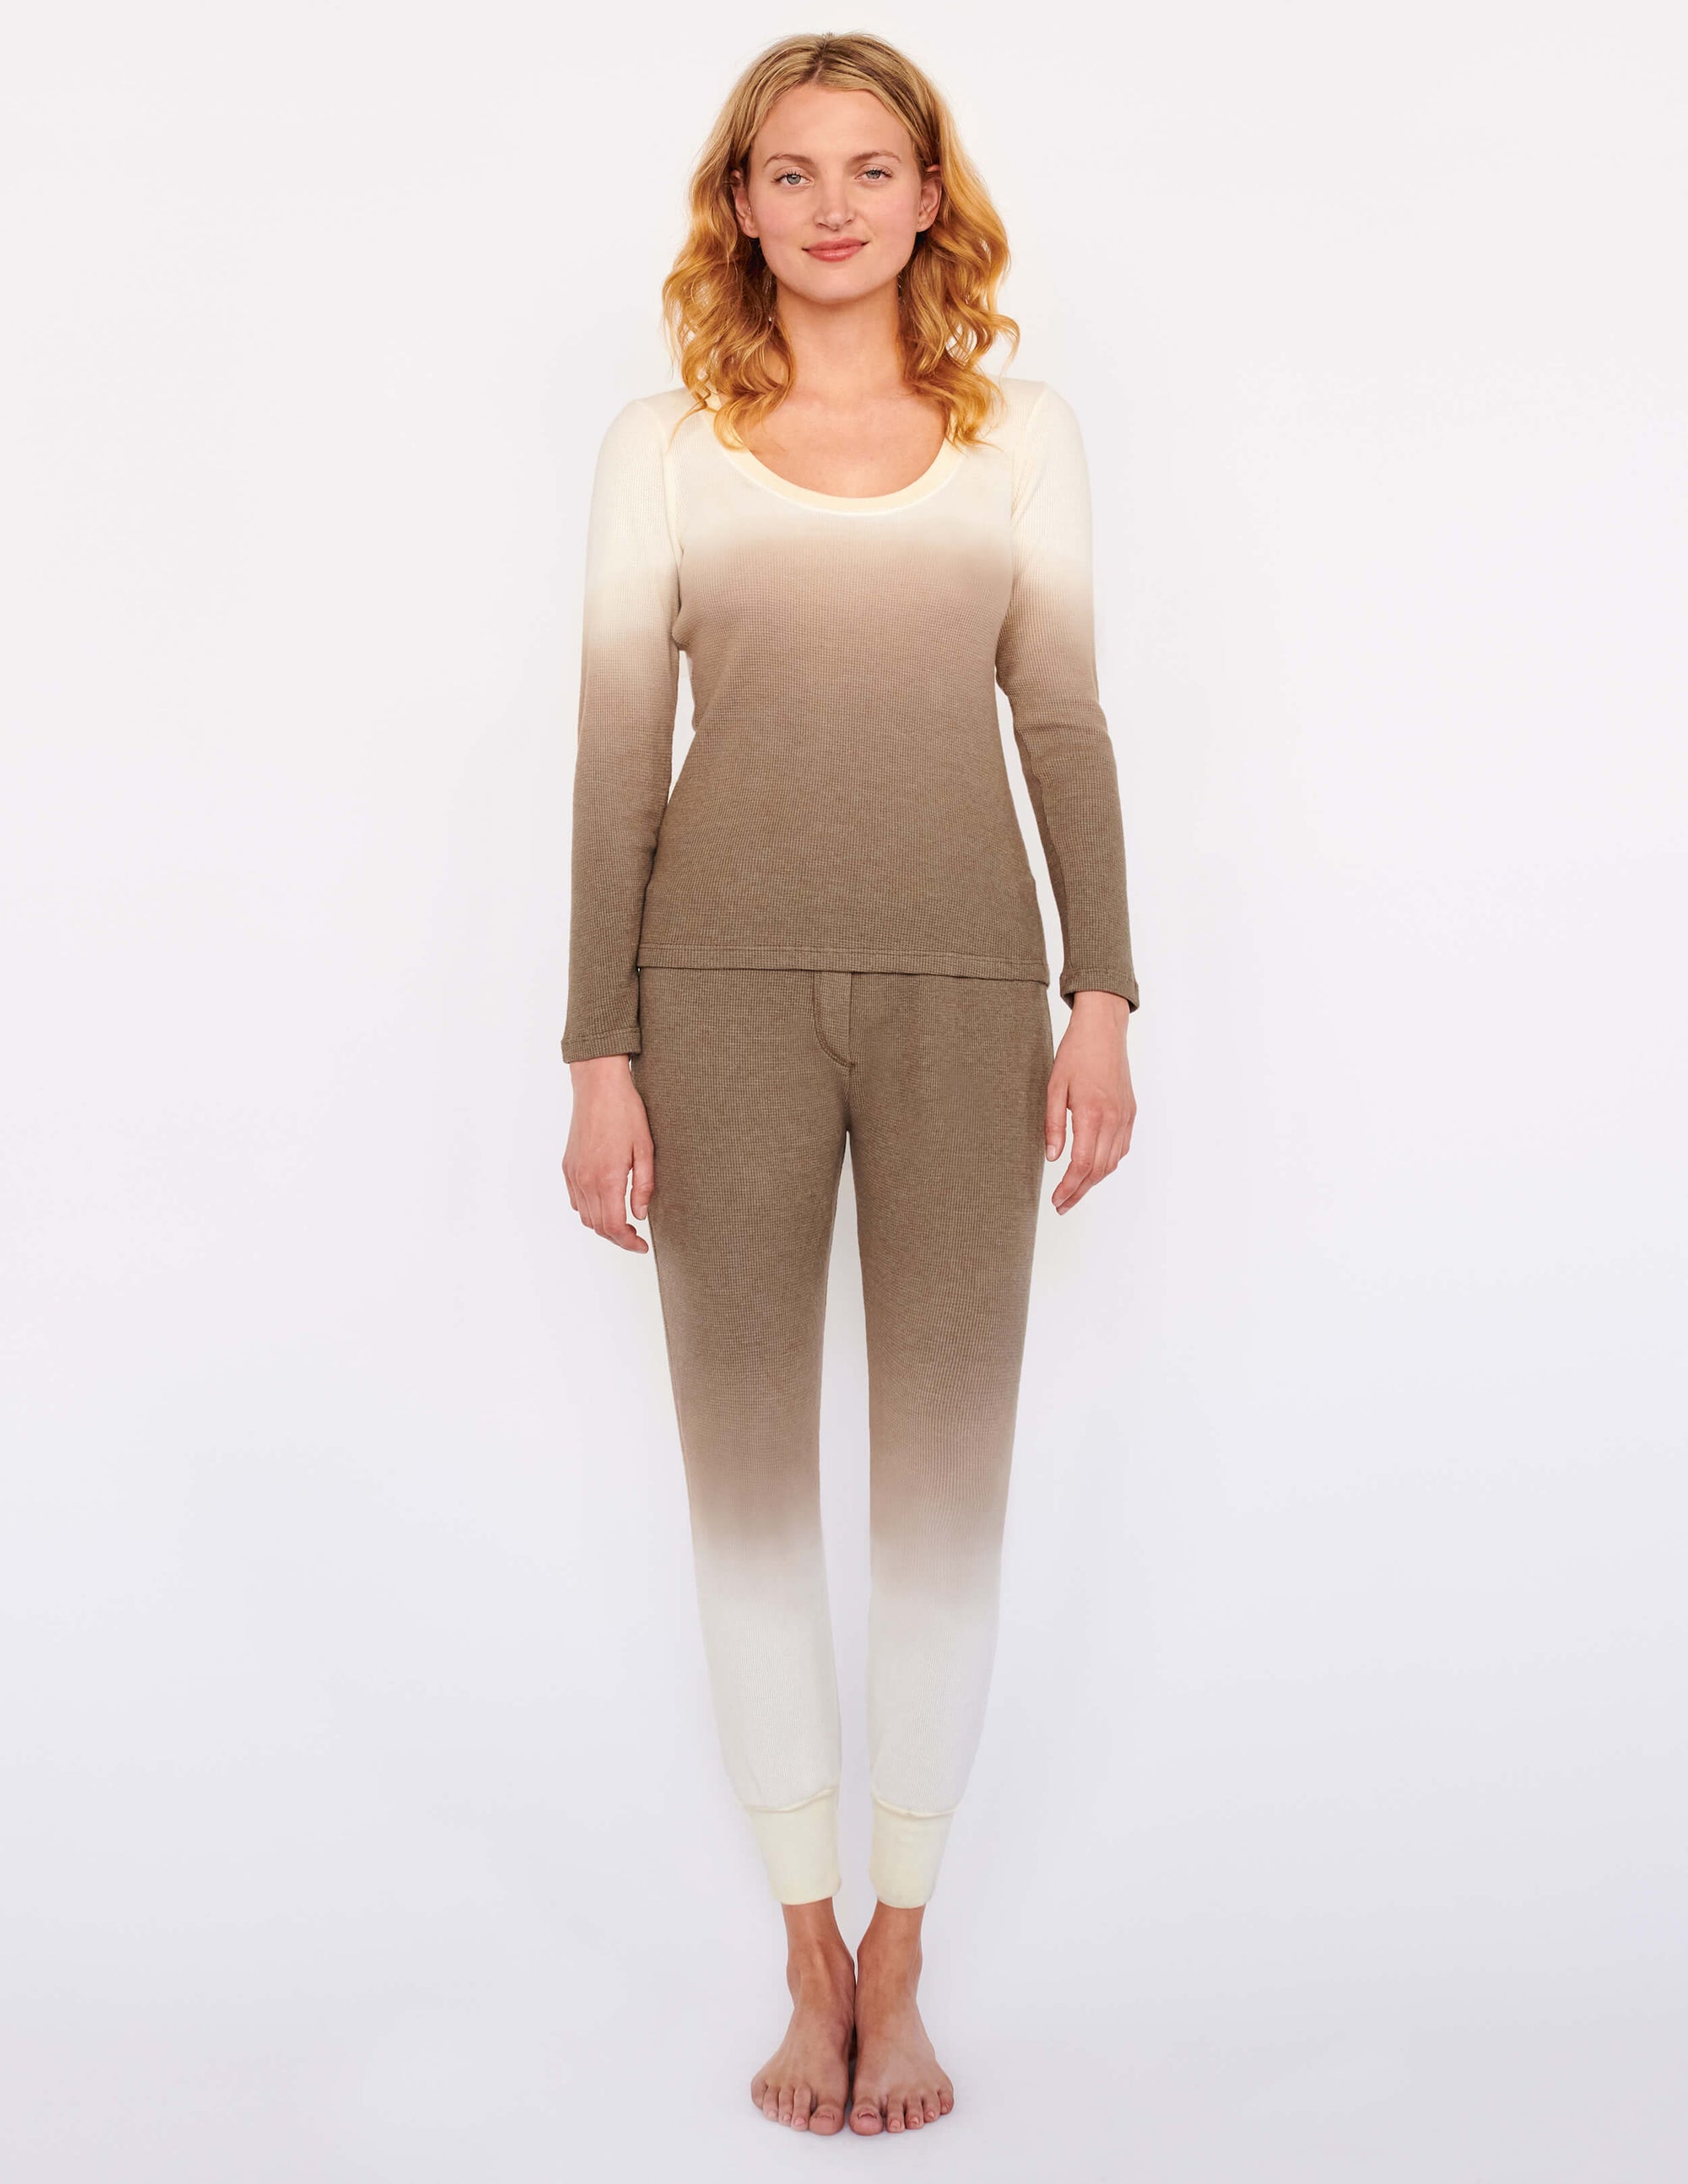 Thermal 2 Piece Pajama Set - Women's Loungewear - Sundry